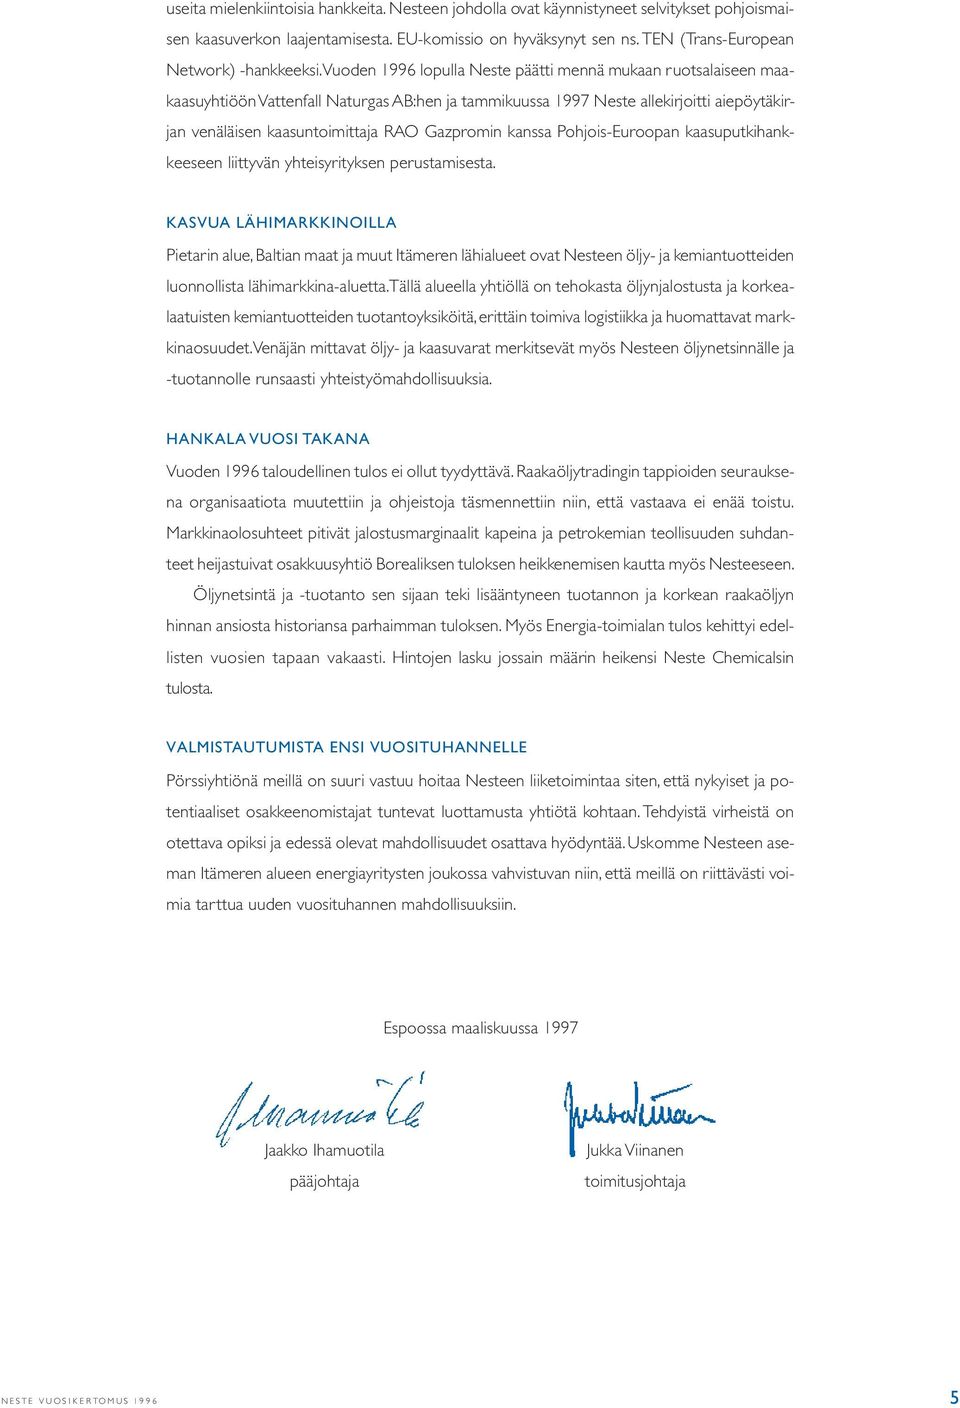 Vuoden 1996 lopulla Neste päätti mennä mukaan ruotsalaiseen maakaasuyhtiöön Vattenfall Naturgas AB:hen ja tammikuussa 1997 Neste allekirjoitti aiepöytäkirjan venäläisen kaasuntoimittaja RAO Gazpromin